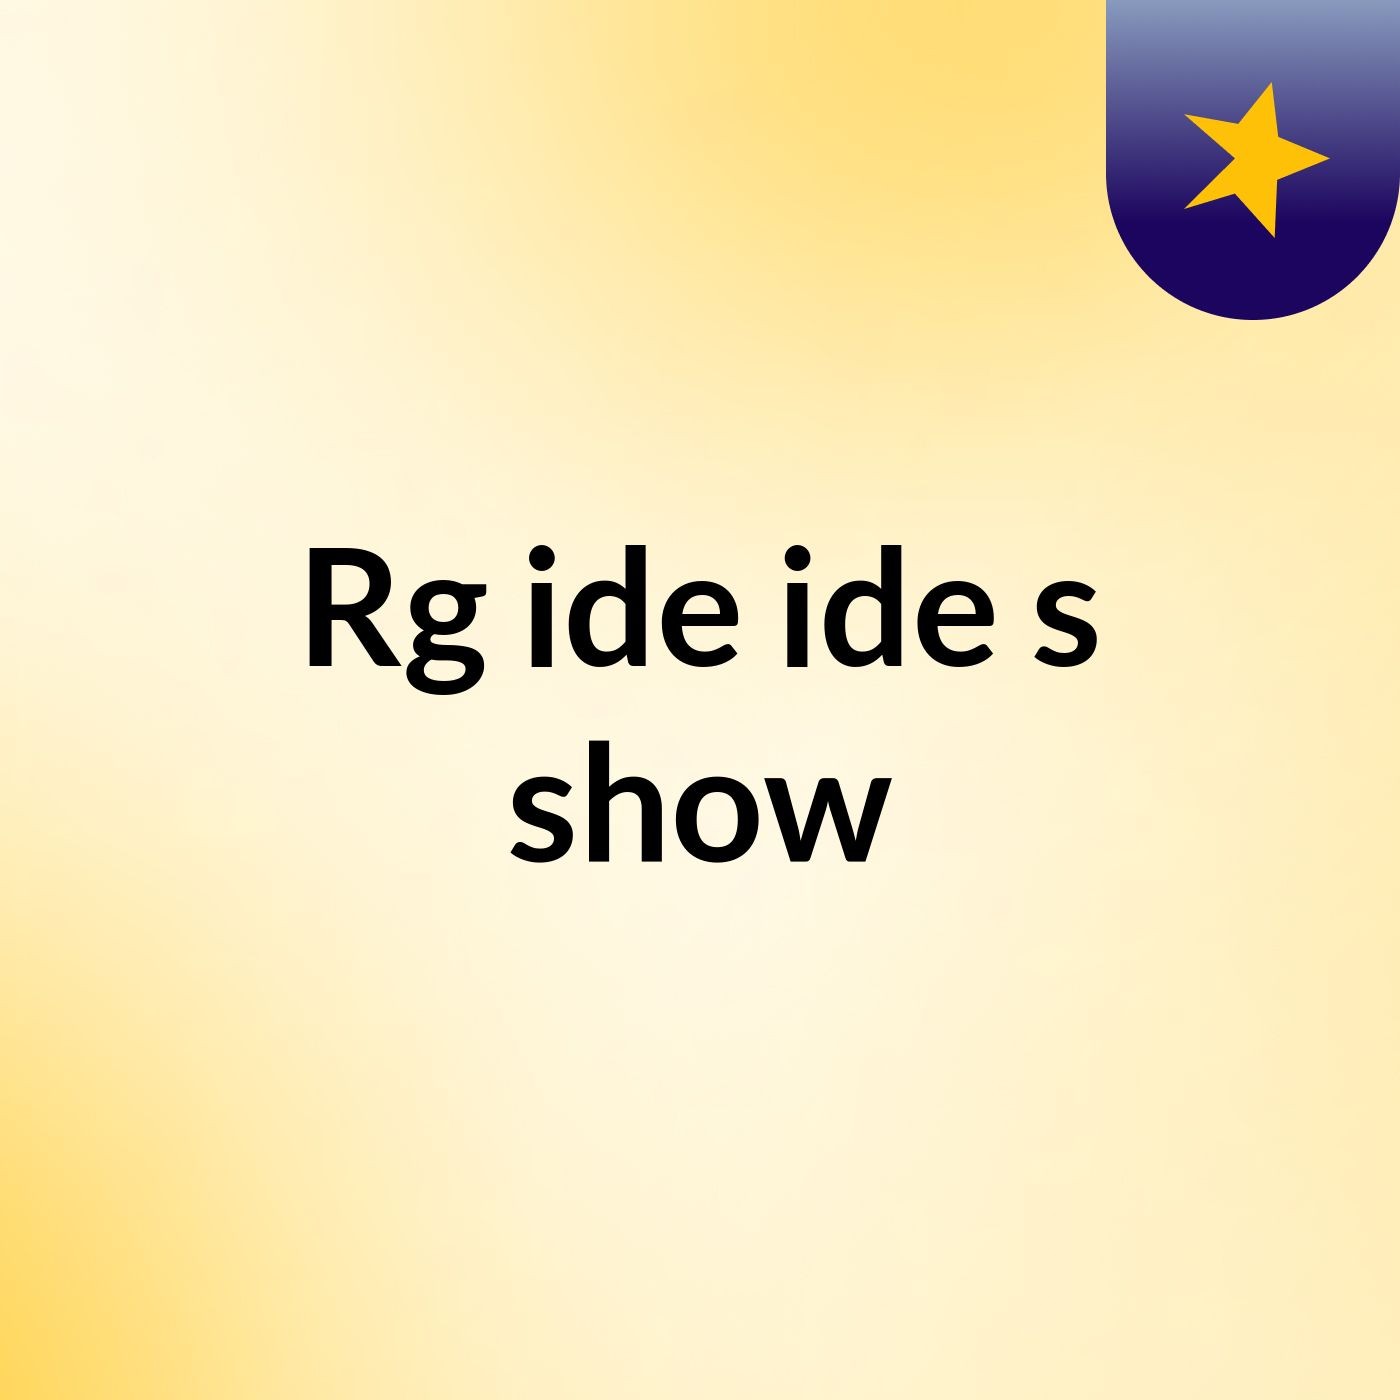 Rg ide ide's show